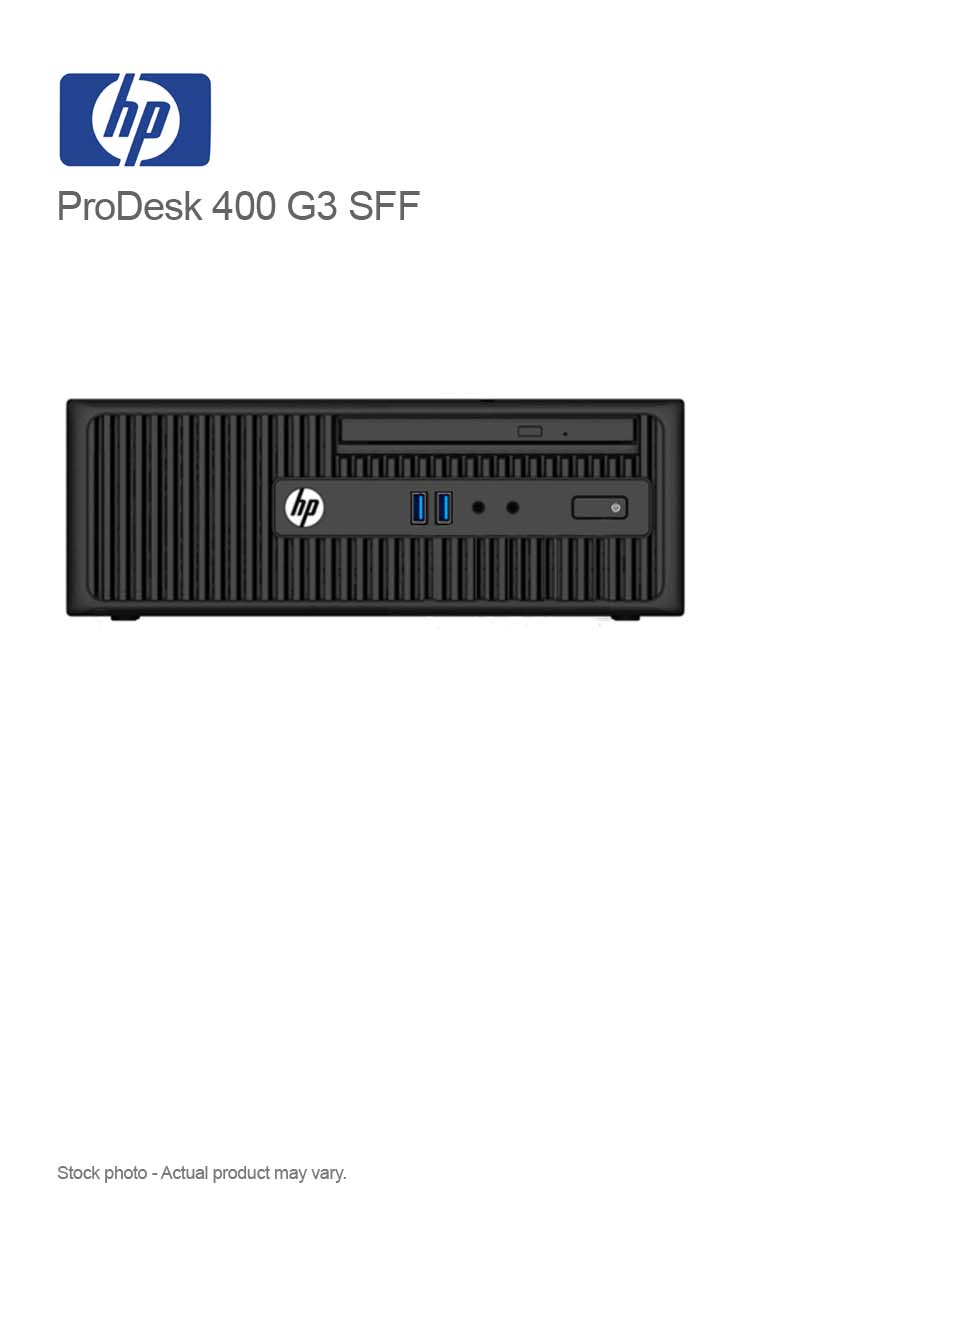 HP ProDesk 400 G3 SFF Core i3-6100 3.7GHz 8GB 240GB SSD WIN 10 PRO